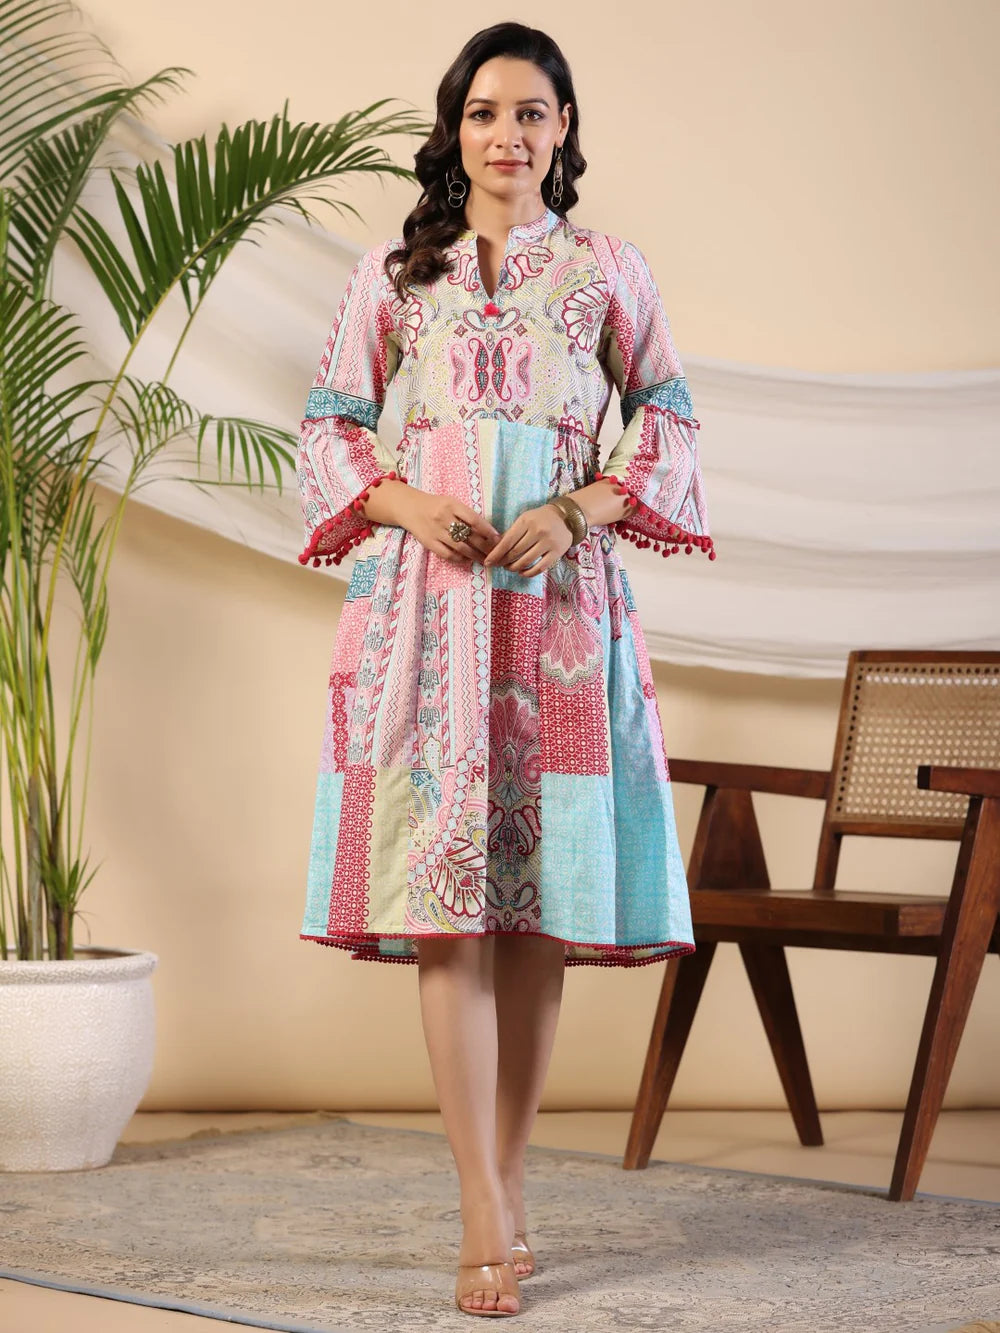 Vibrant Chic: Multi-Colored Cotton Cambric Printed Dress